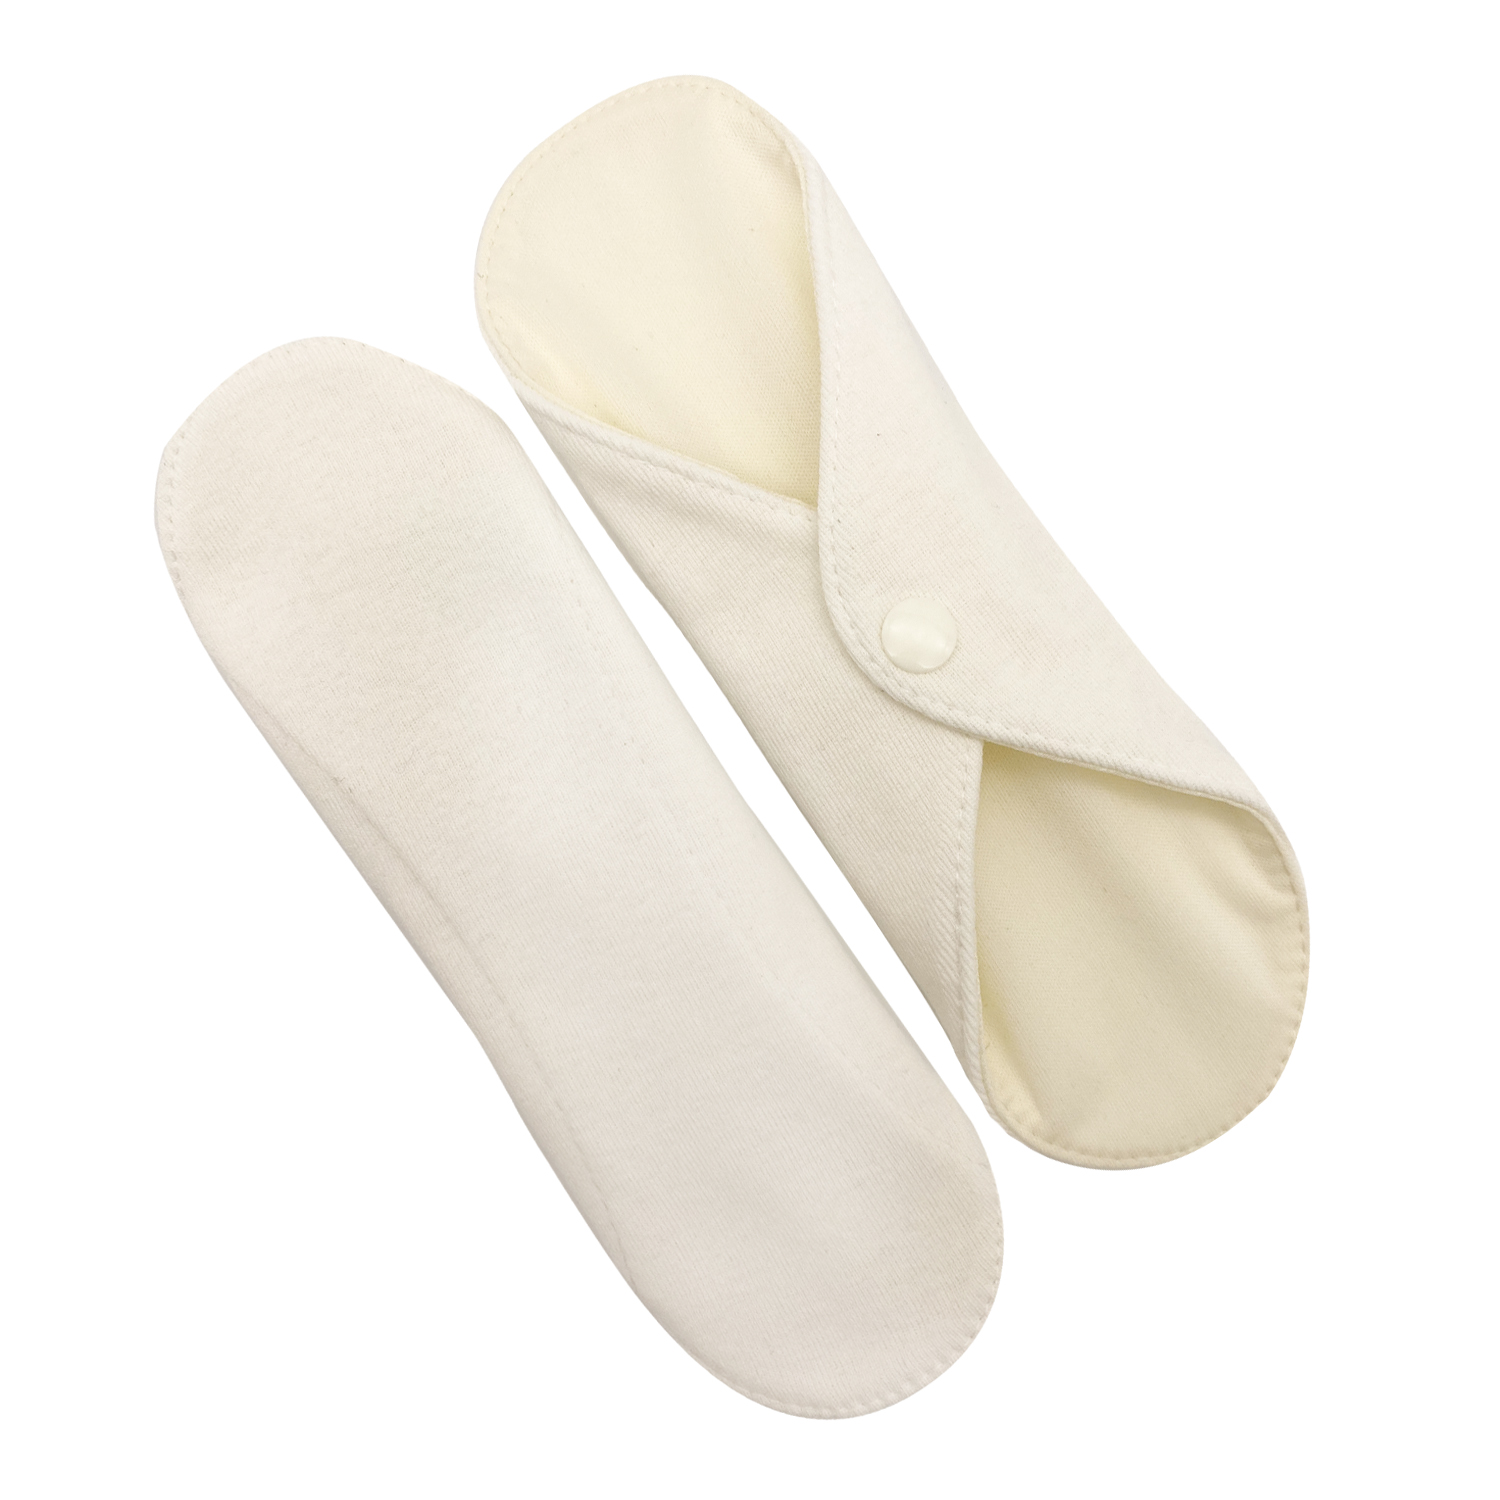 Прокладки для менструации многоразовые Mamalino бежевые набор 2 шт. размер Миди набор для бритья mrborodach чаша для мыла и крема и держатель для чаши и помазка